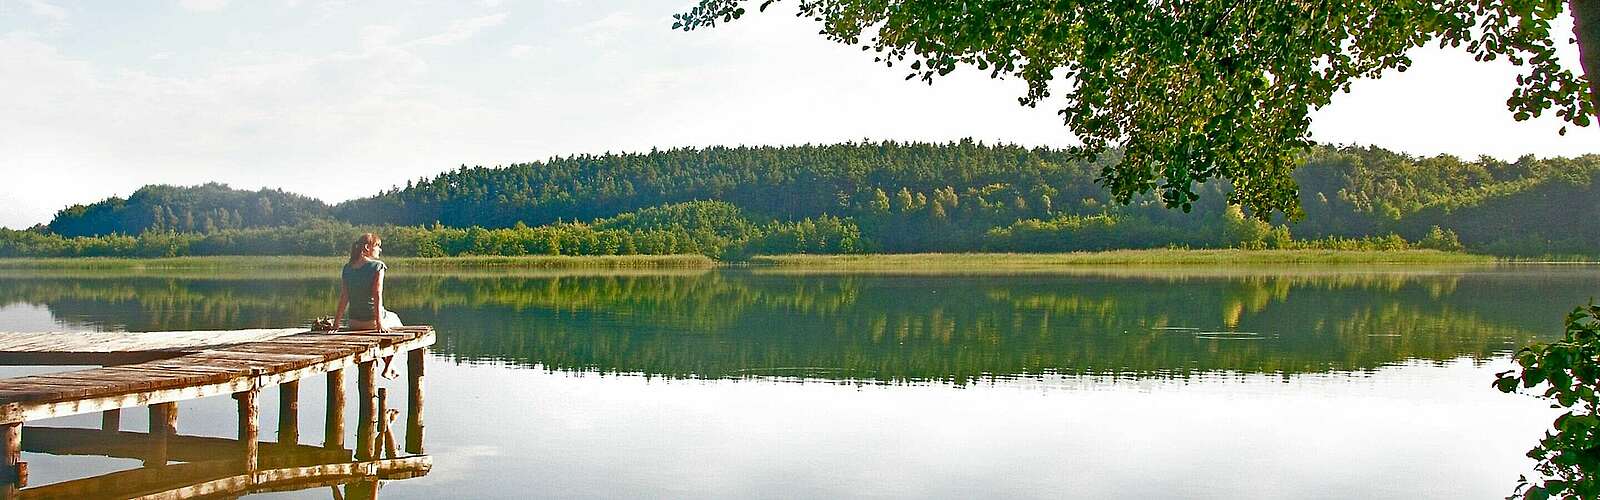 Entspannung im Naturpark Uckermärkische Seen,
        
    

        Foto: Fotograf / Lizenz - Media Import/Hendrik Silbermann